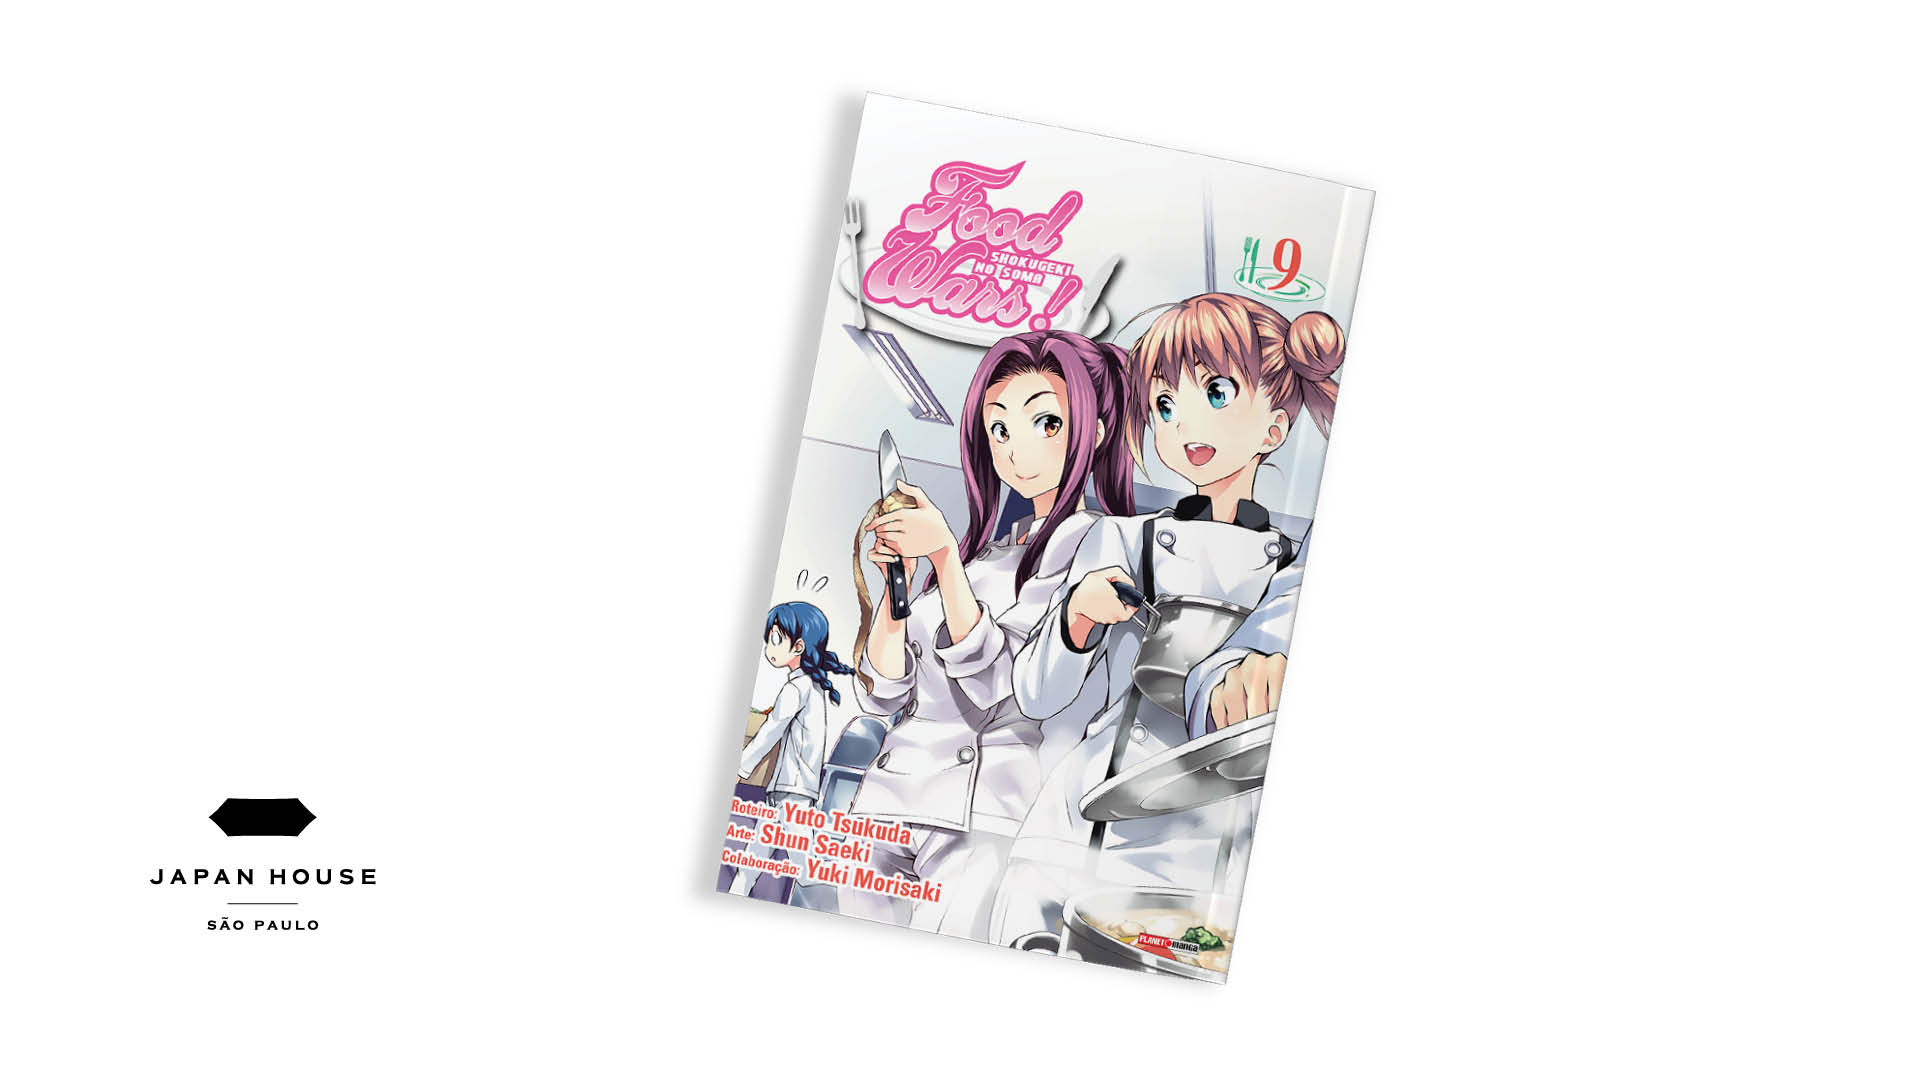 Capa do mangá ‘Food Wars!’, de Yuuto Tsukuda, Yuki Morisaki e Shun Saeki em fundo branco